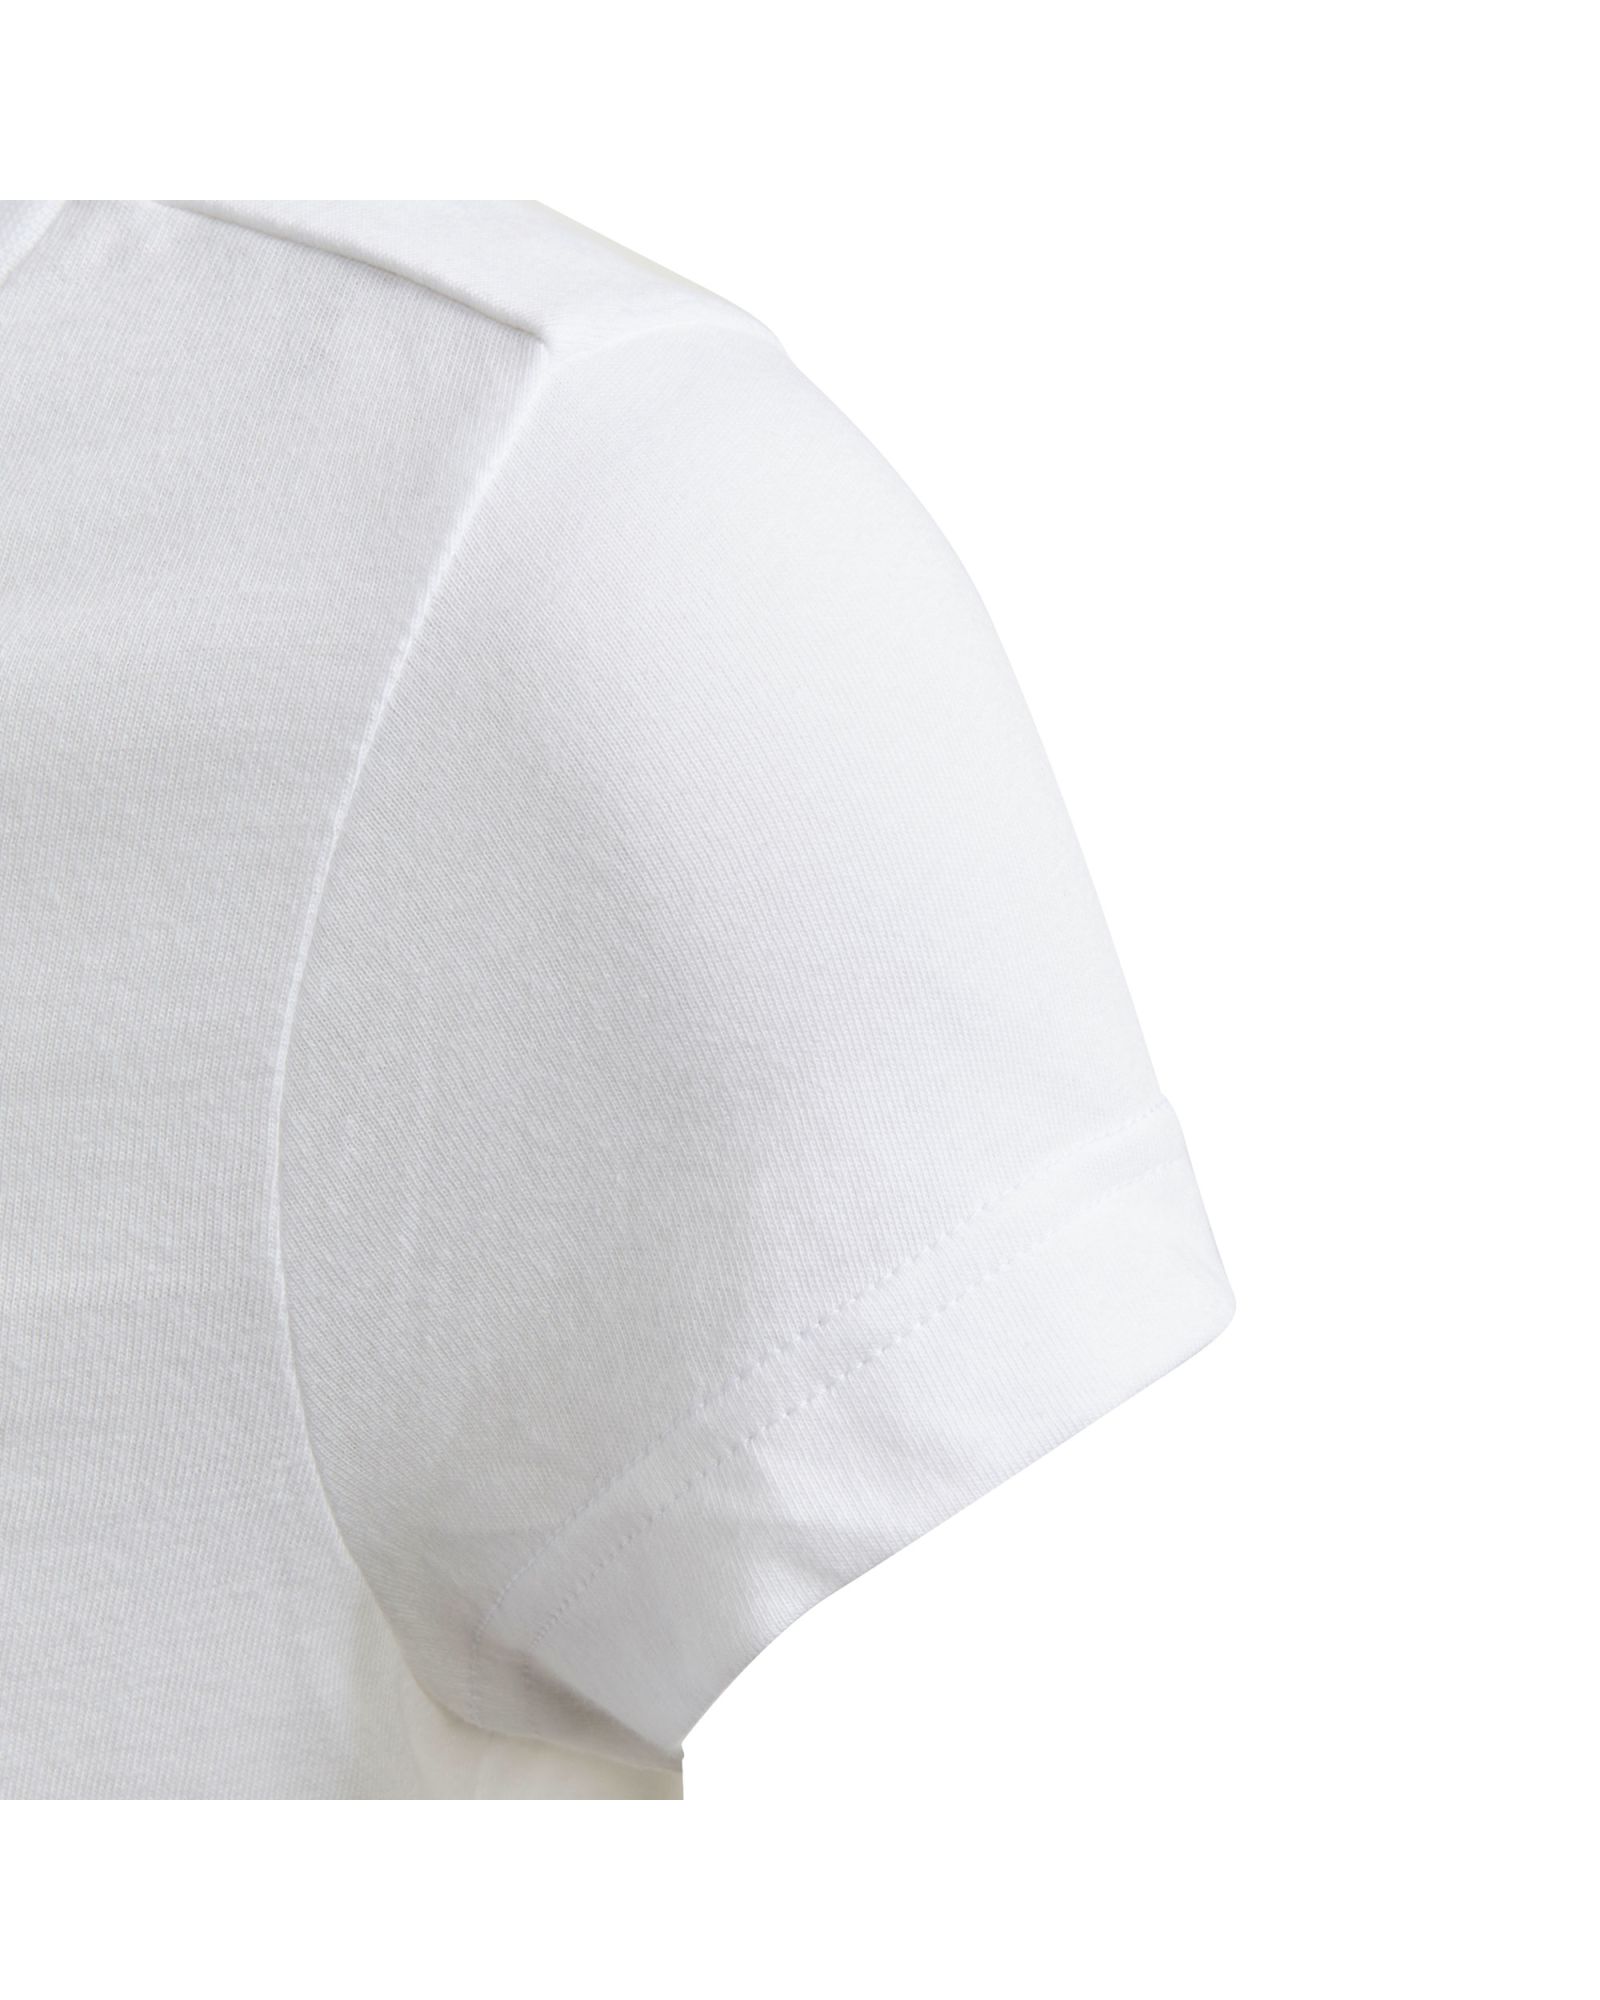 Camiseta de Paseo Must Haves Bos Junior Blanco - Fútbol Factory